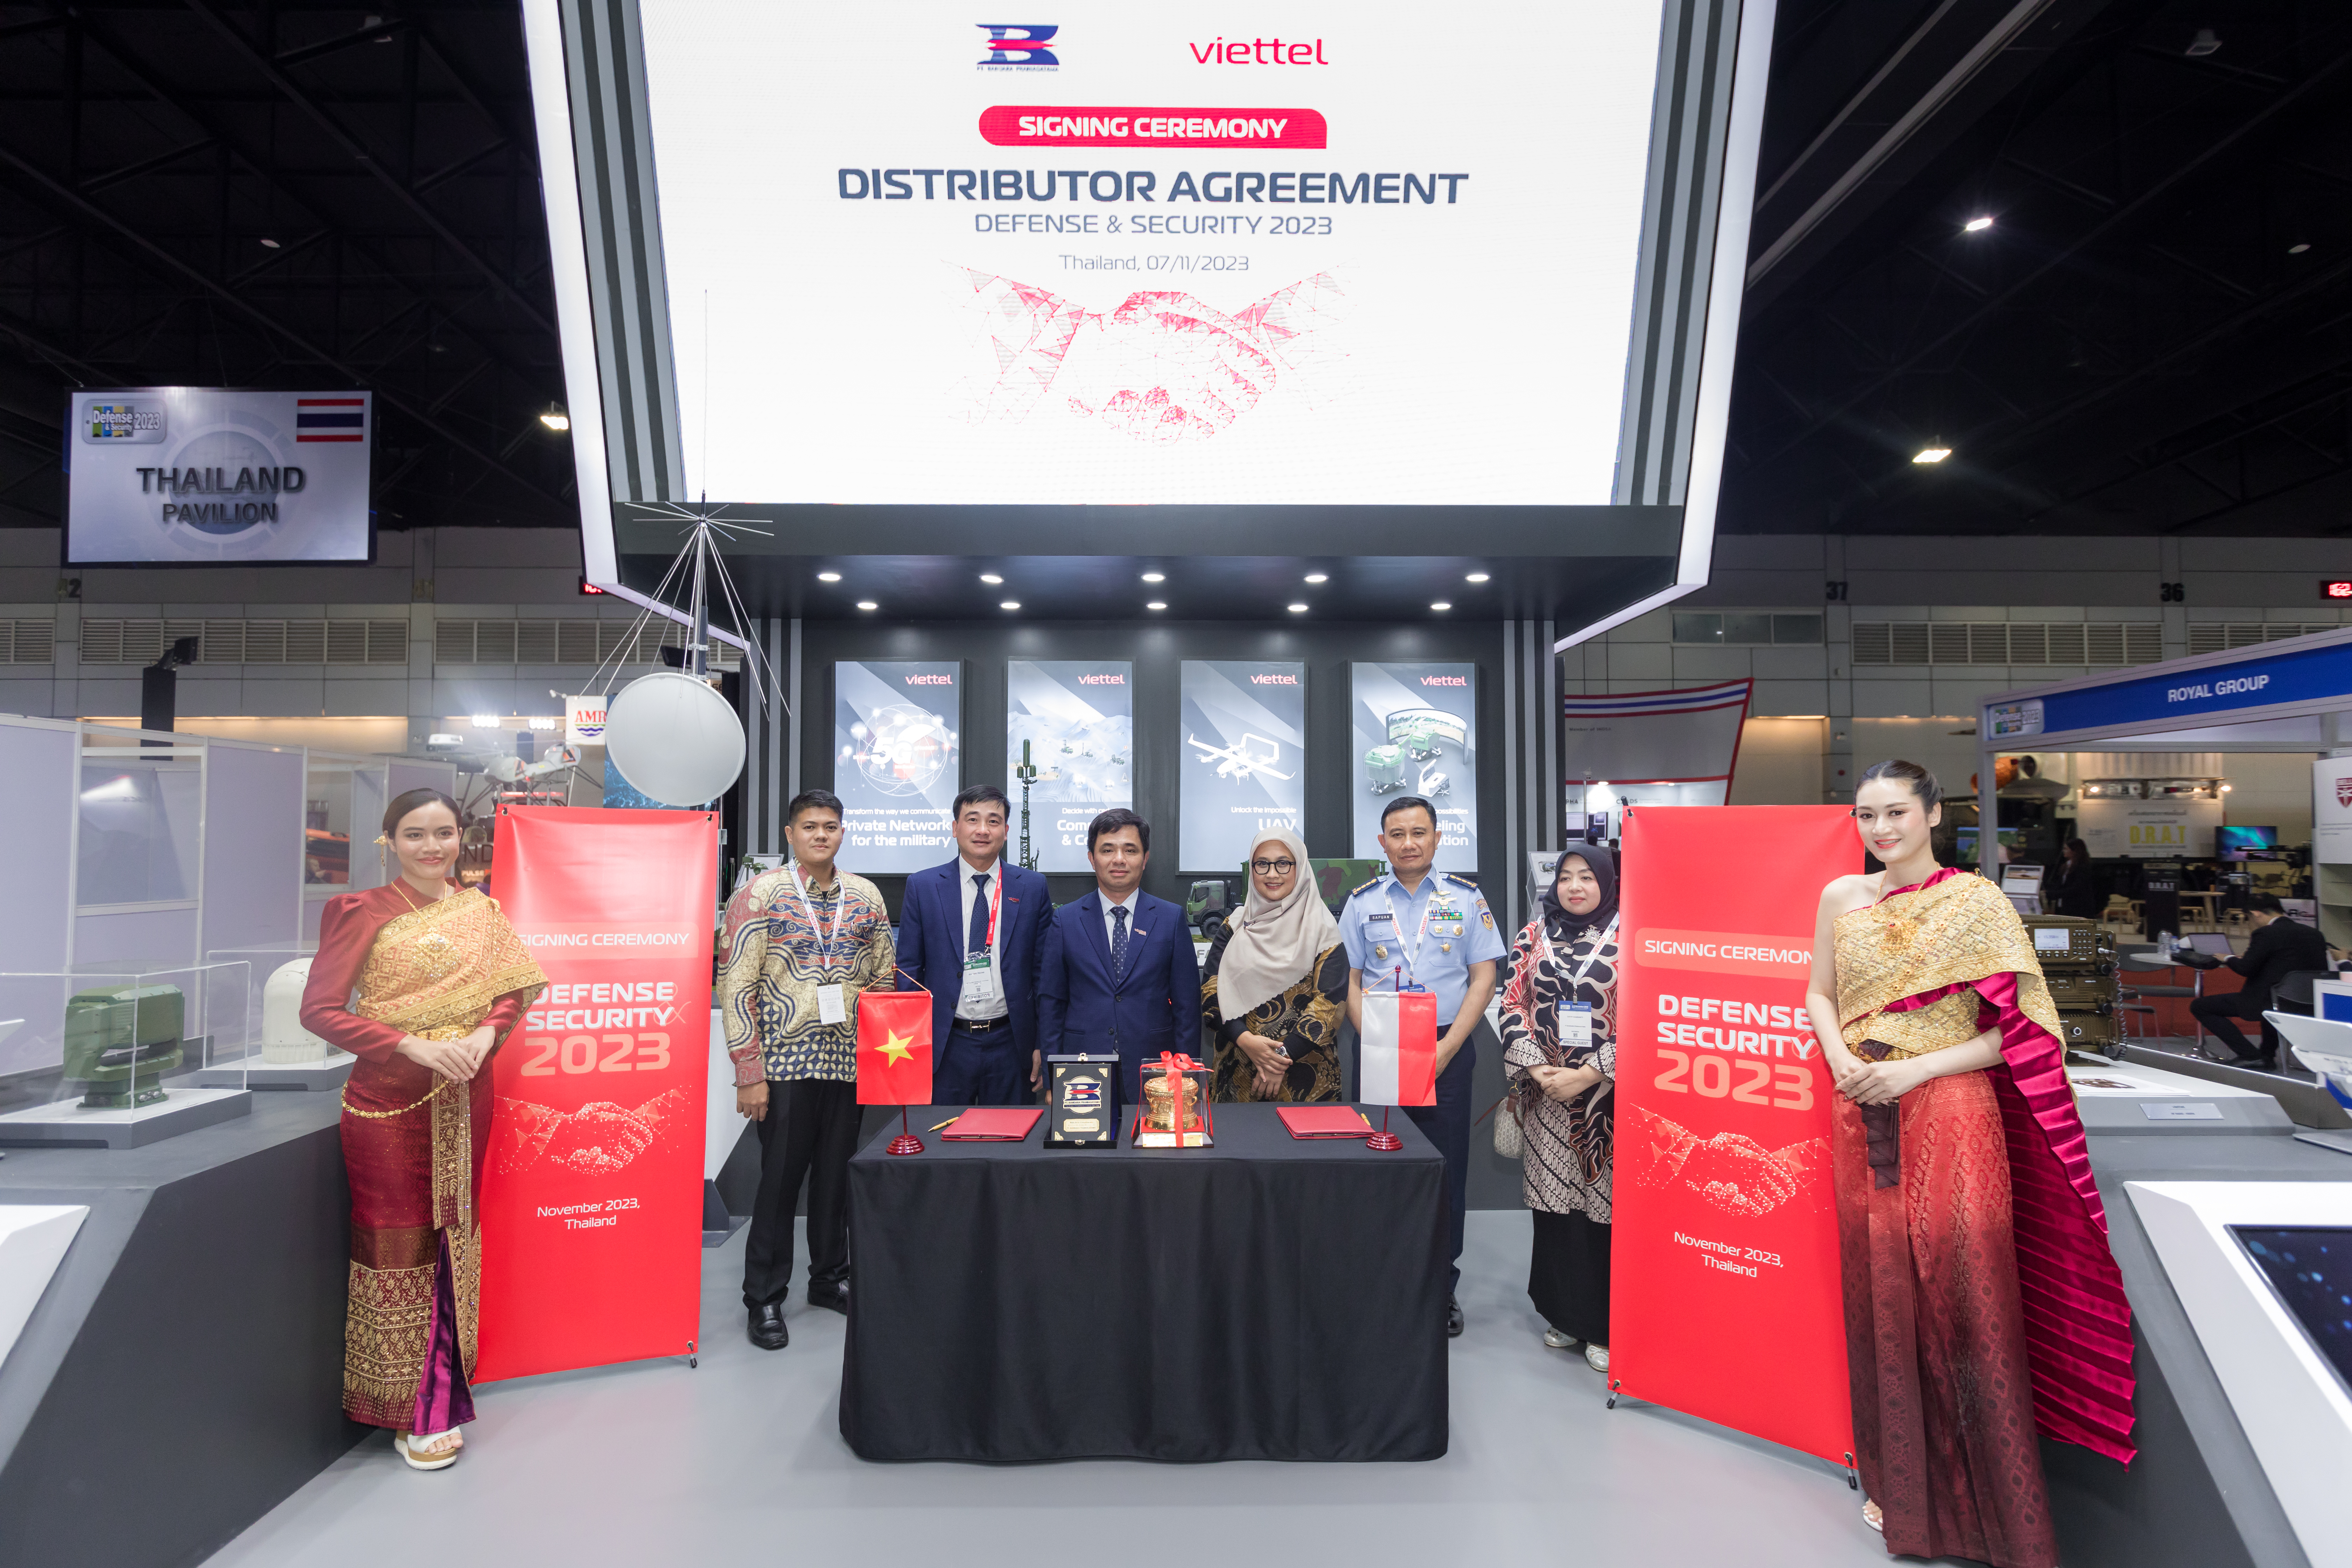 1-Viettel High Tech và Công ty PT. Bandara Praniagatama (Indonesia) đã ký kết Thỏa thuận về phân phối sản phẩm Hệ thống mô phỏng huấn luyện kíp chỉ huy bay và buồng lái máy bay của Viettel tại Indonesia